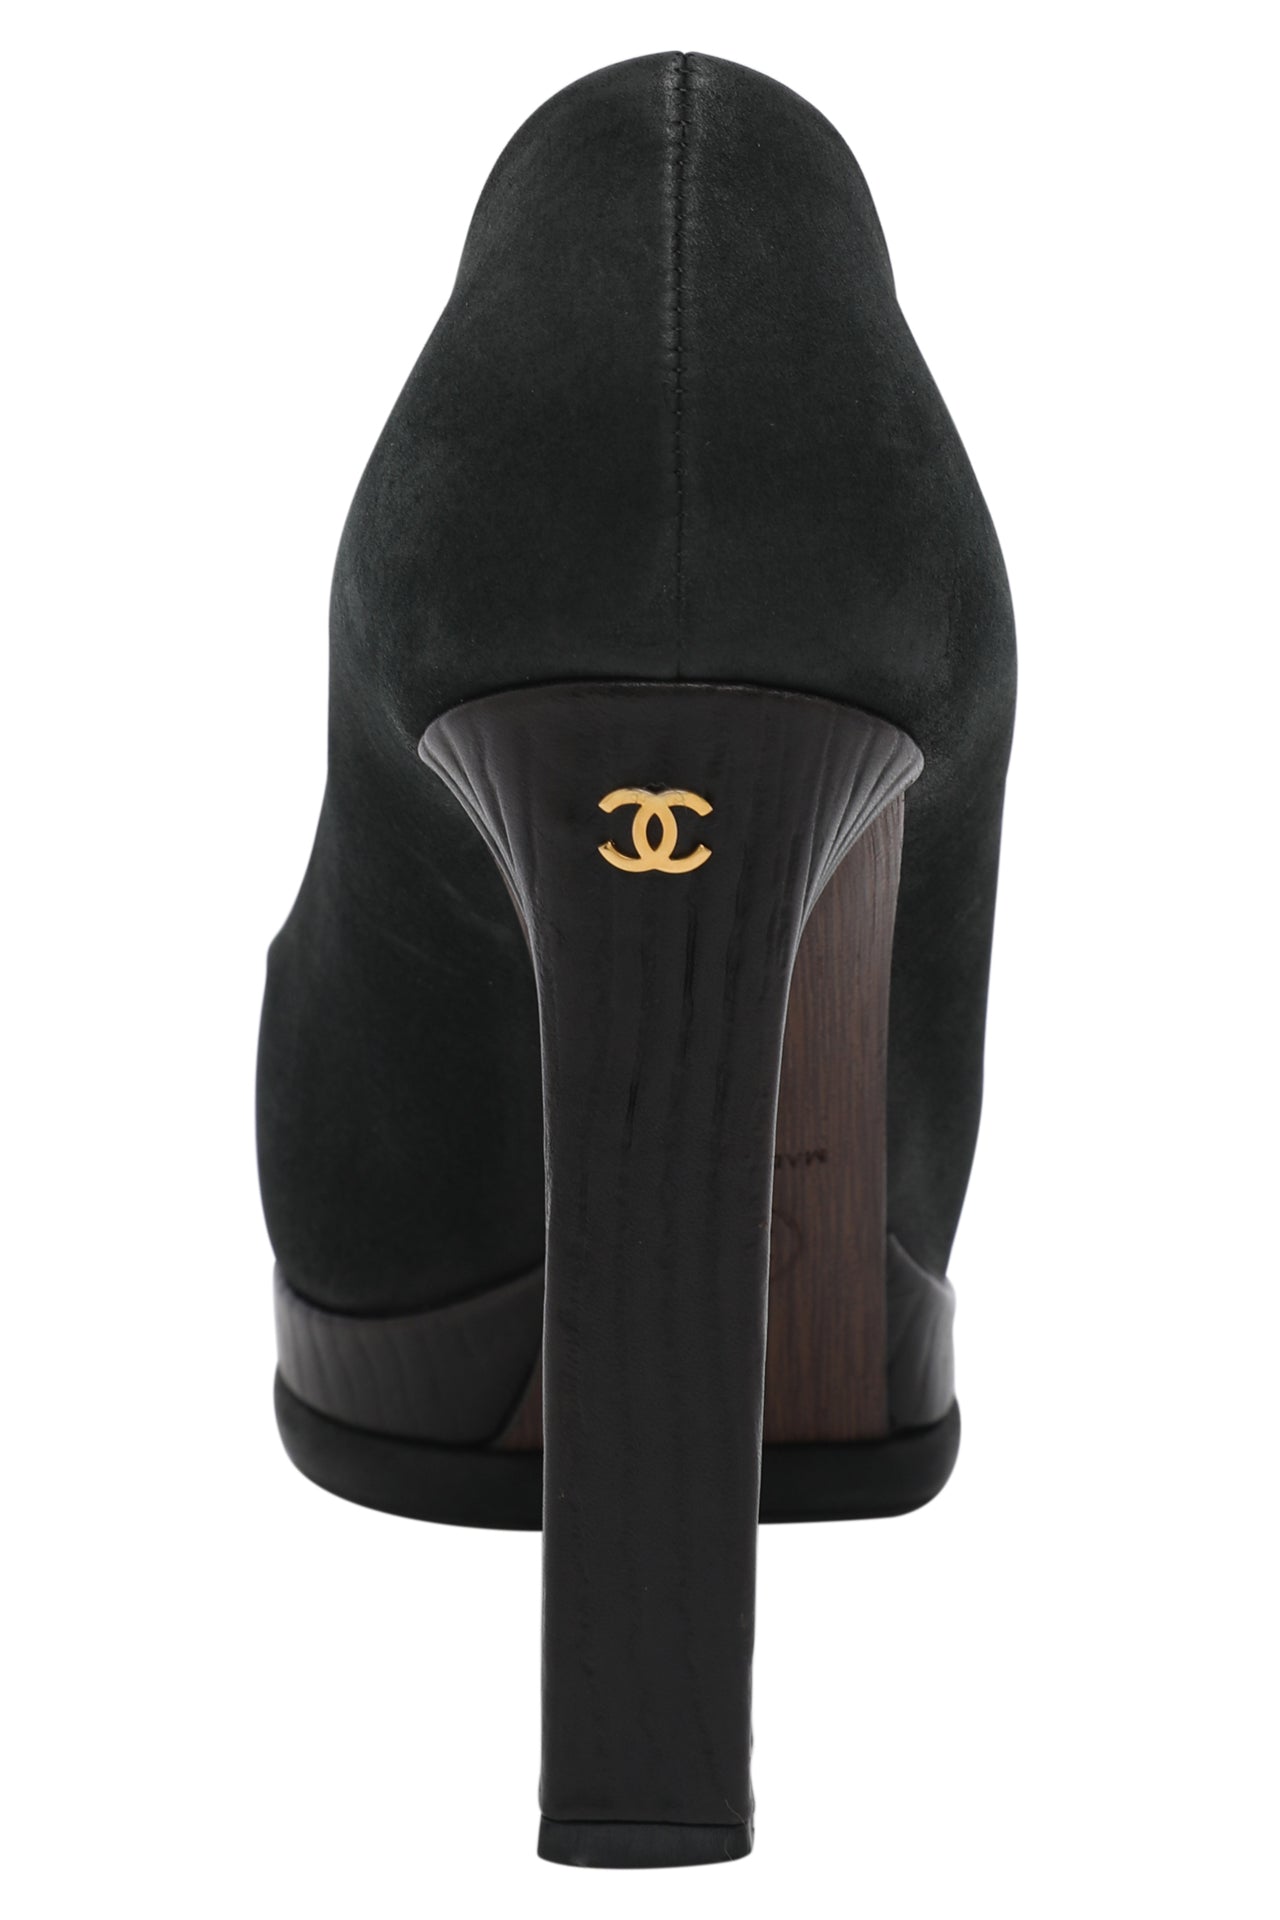 Chanel Black Suede and Leather Cap Toe Emblem Platform Pumps EU 36.5 C